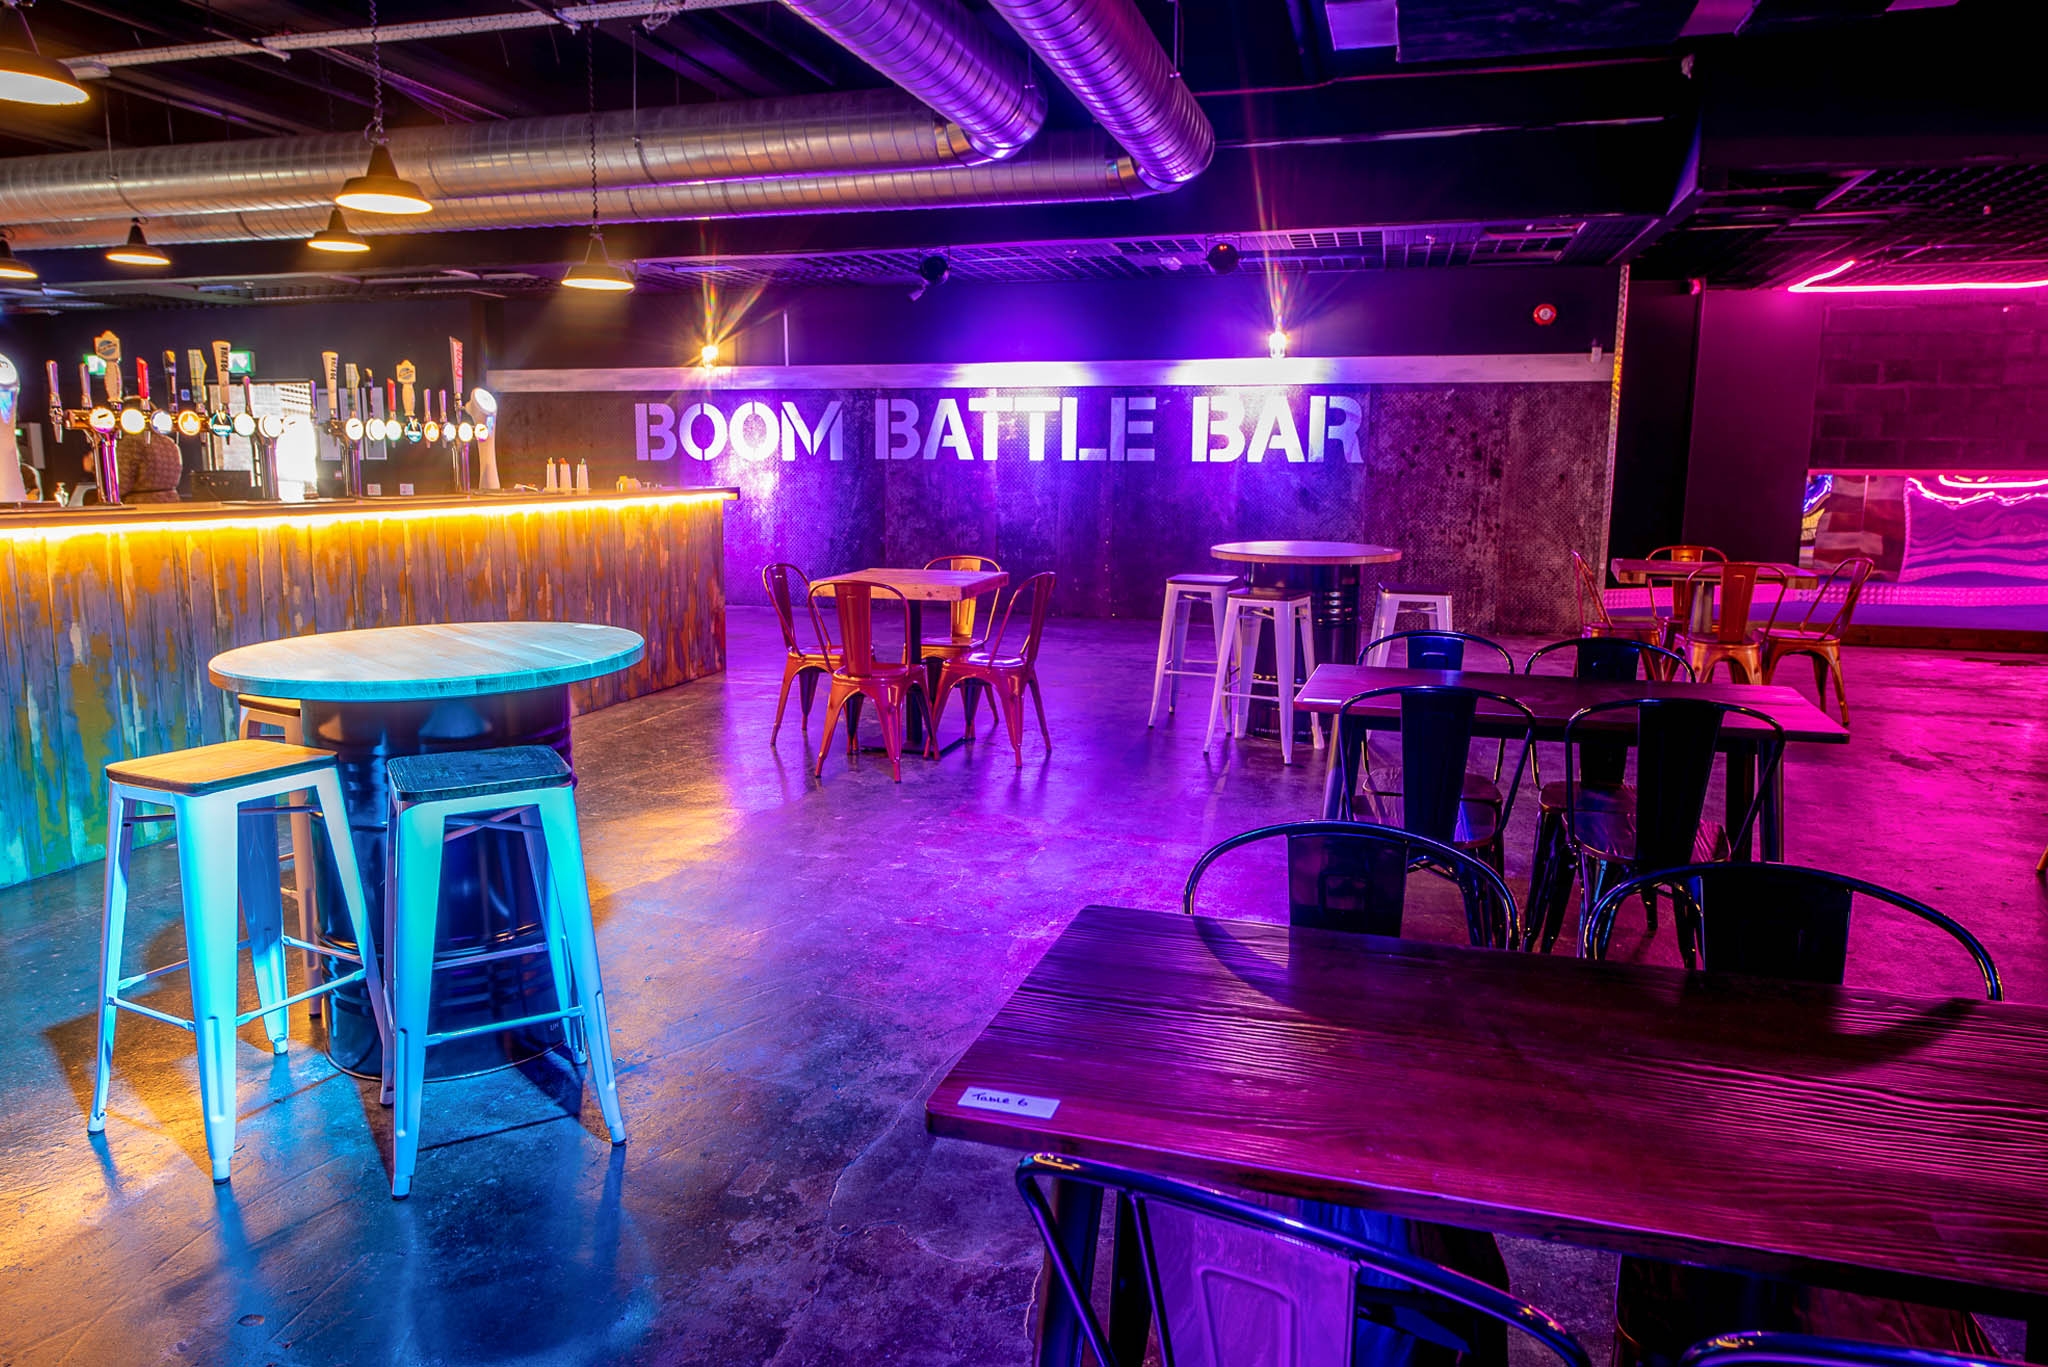 Boom Battle Bar on Thursday 19th January